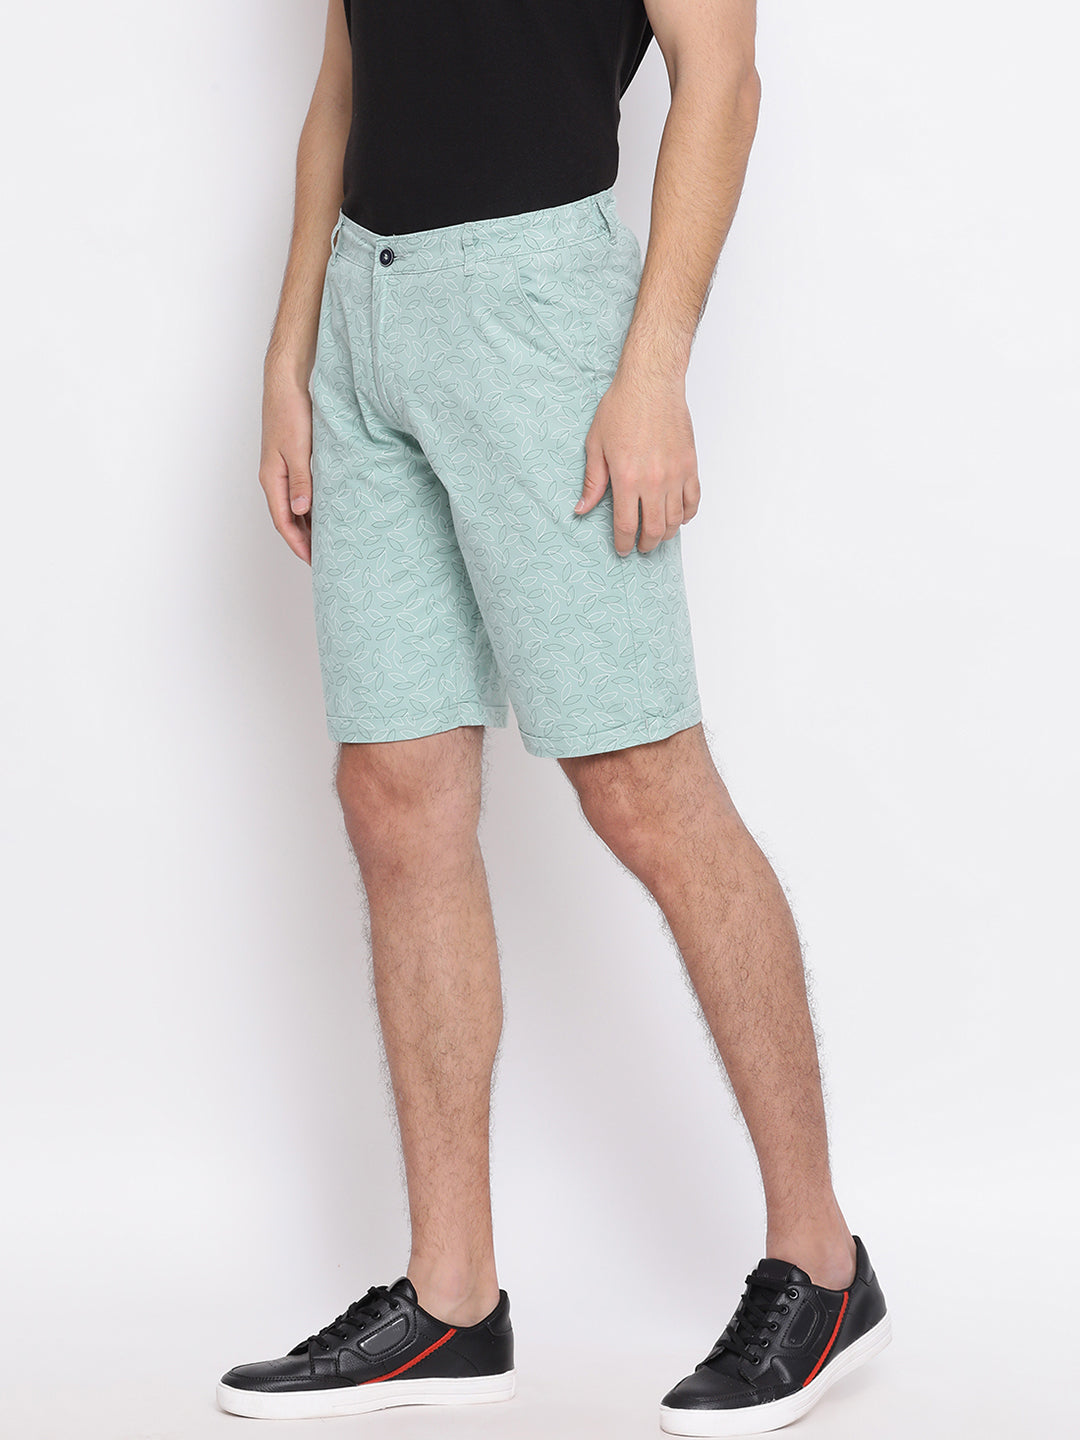 Green Printed Shorts - Men Shorts